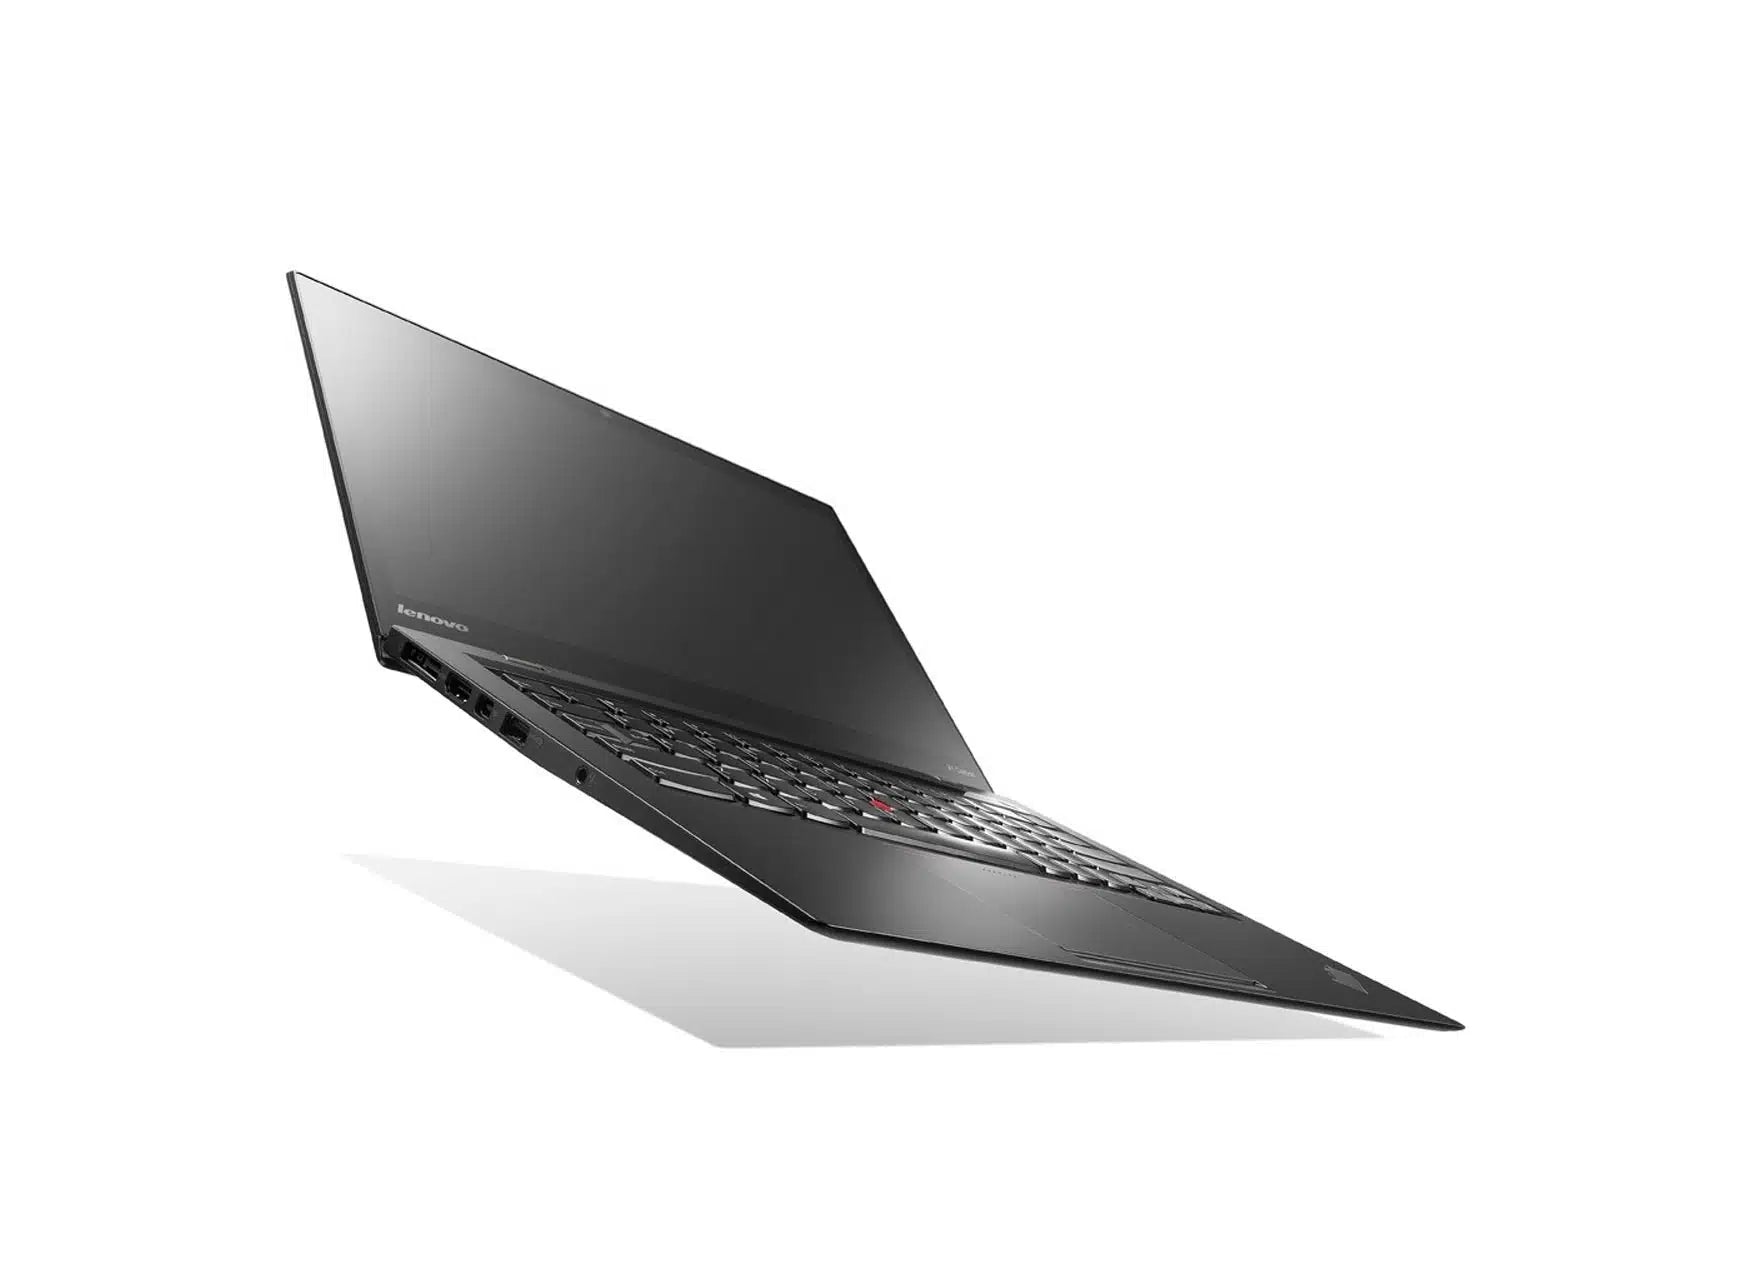 Lenovo Thinkpad Yoga 12 i5 (5th Gen) 4GB RAM 128GB SSD Touch 12.5